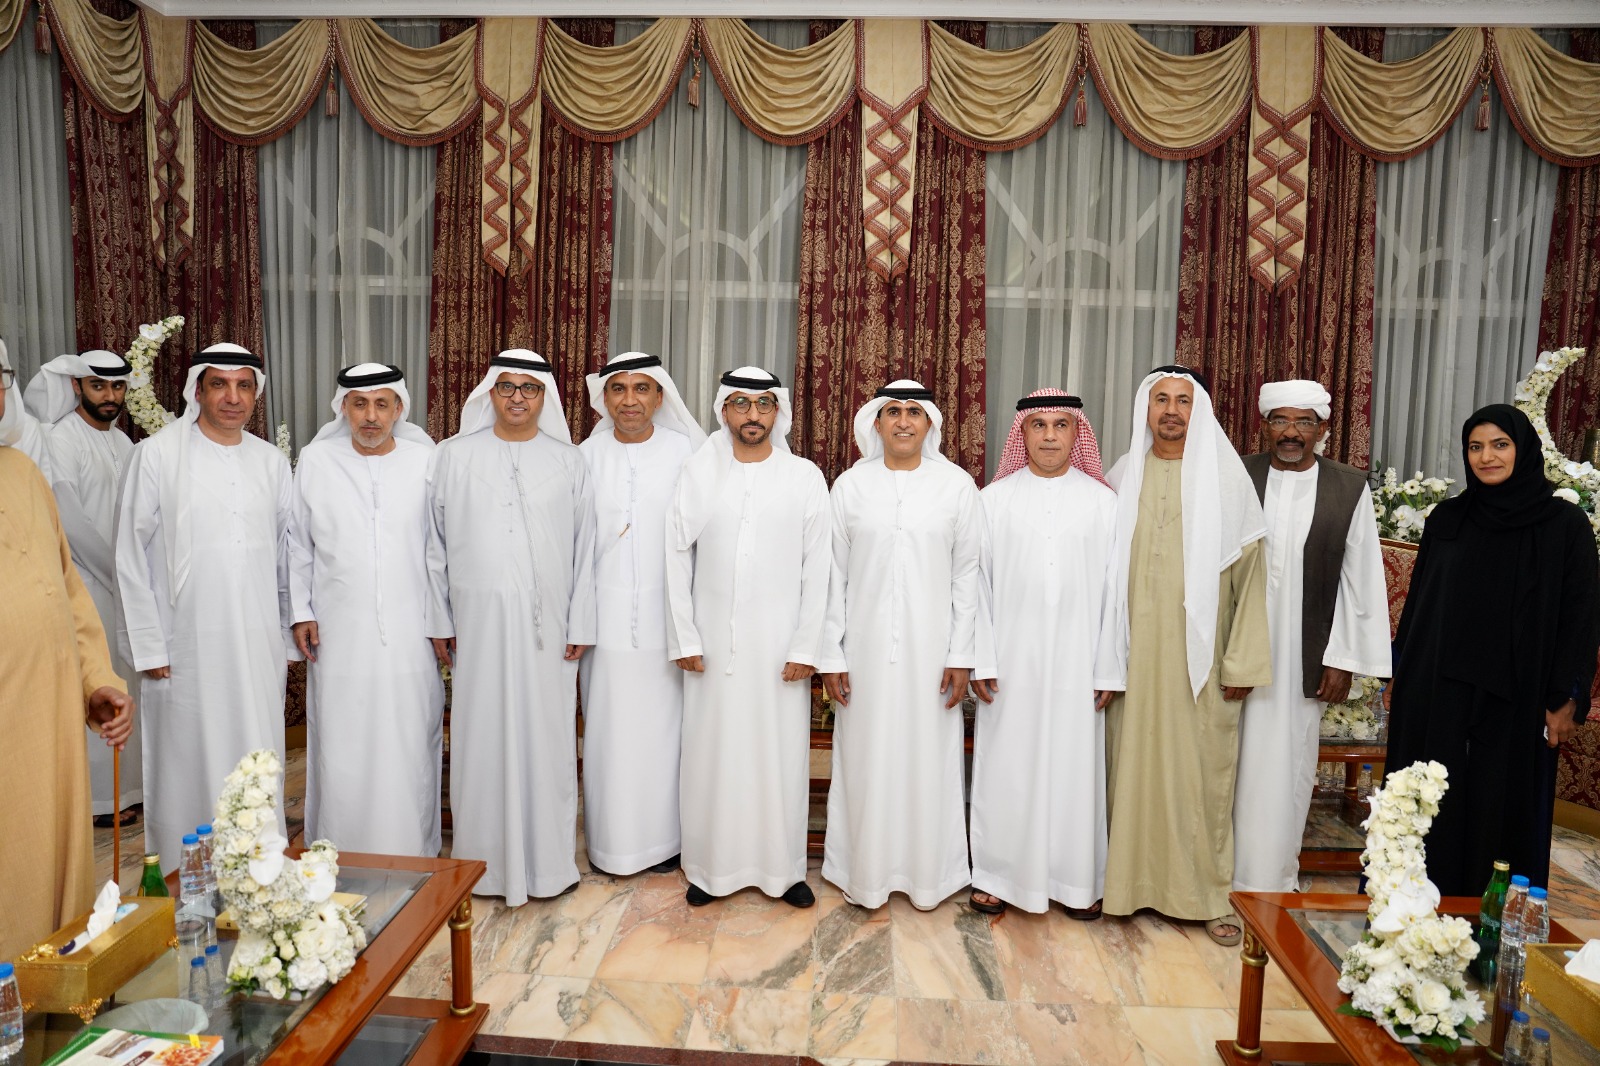 مجلس سالم بن سلطان القاسمي برأس الخيمة يستضيف أمسية رمضانية نظمتها جمعية الصحفيين الإماراتية